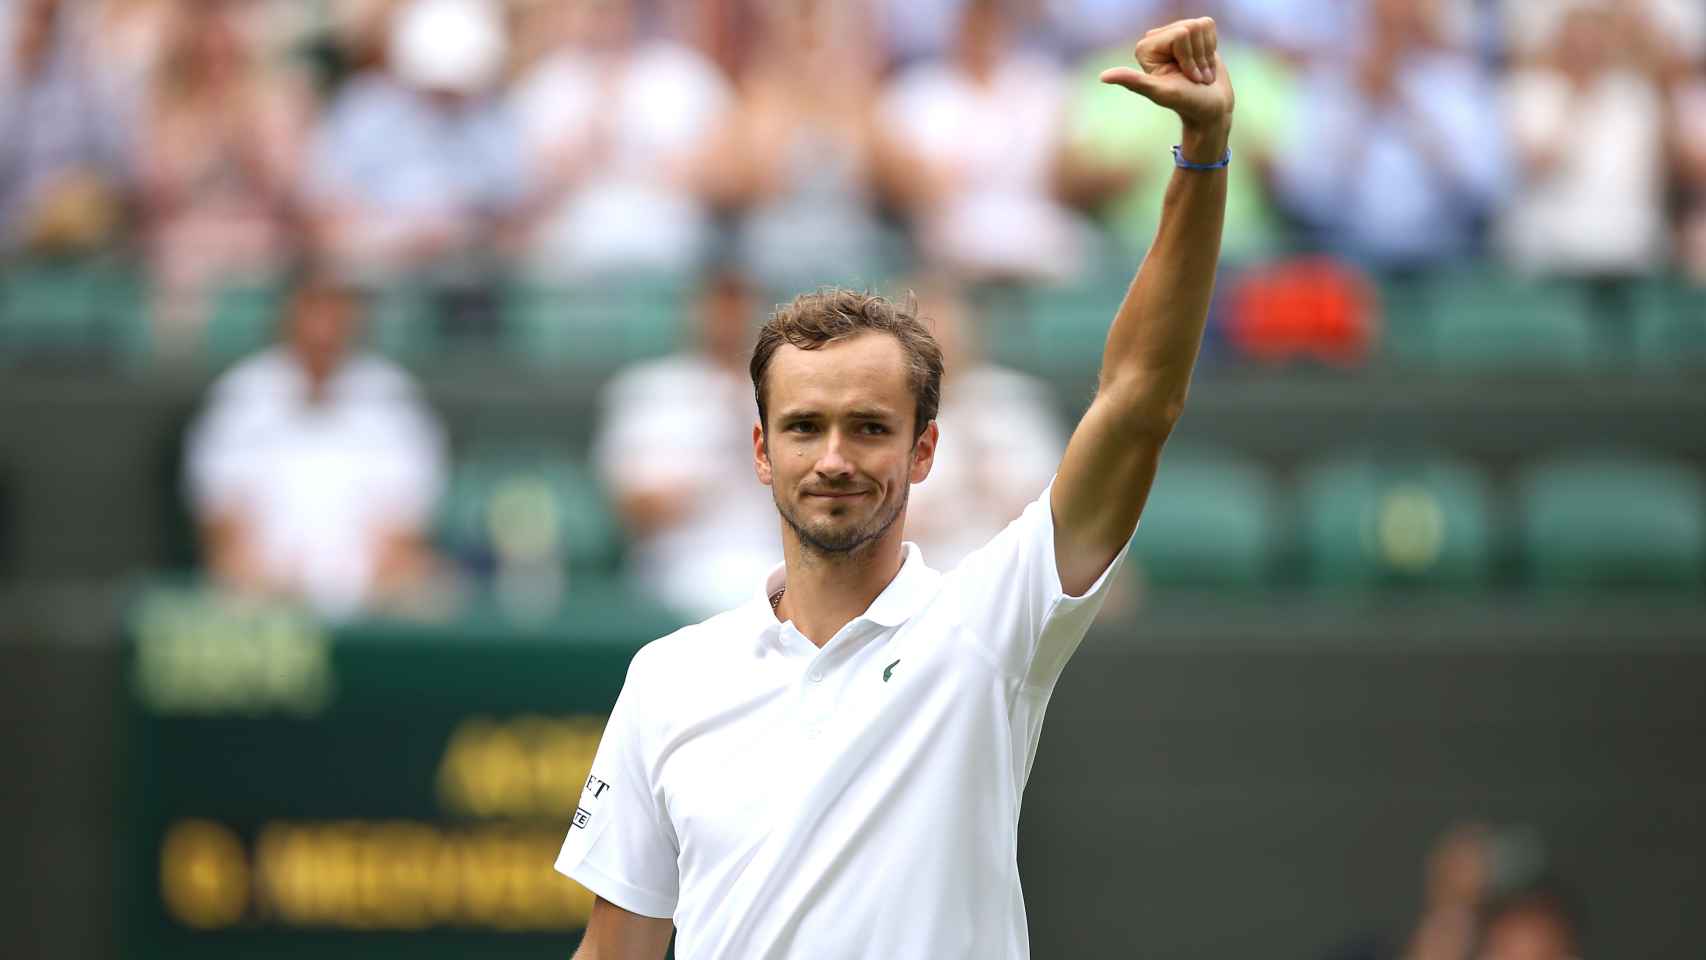 Medvedev celebrando una victoria en Wimbledon.